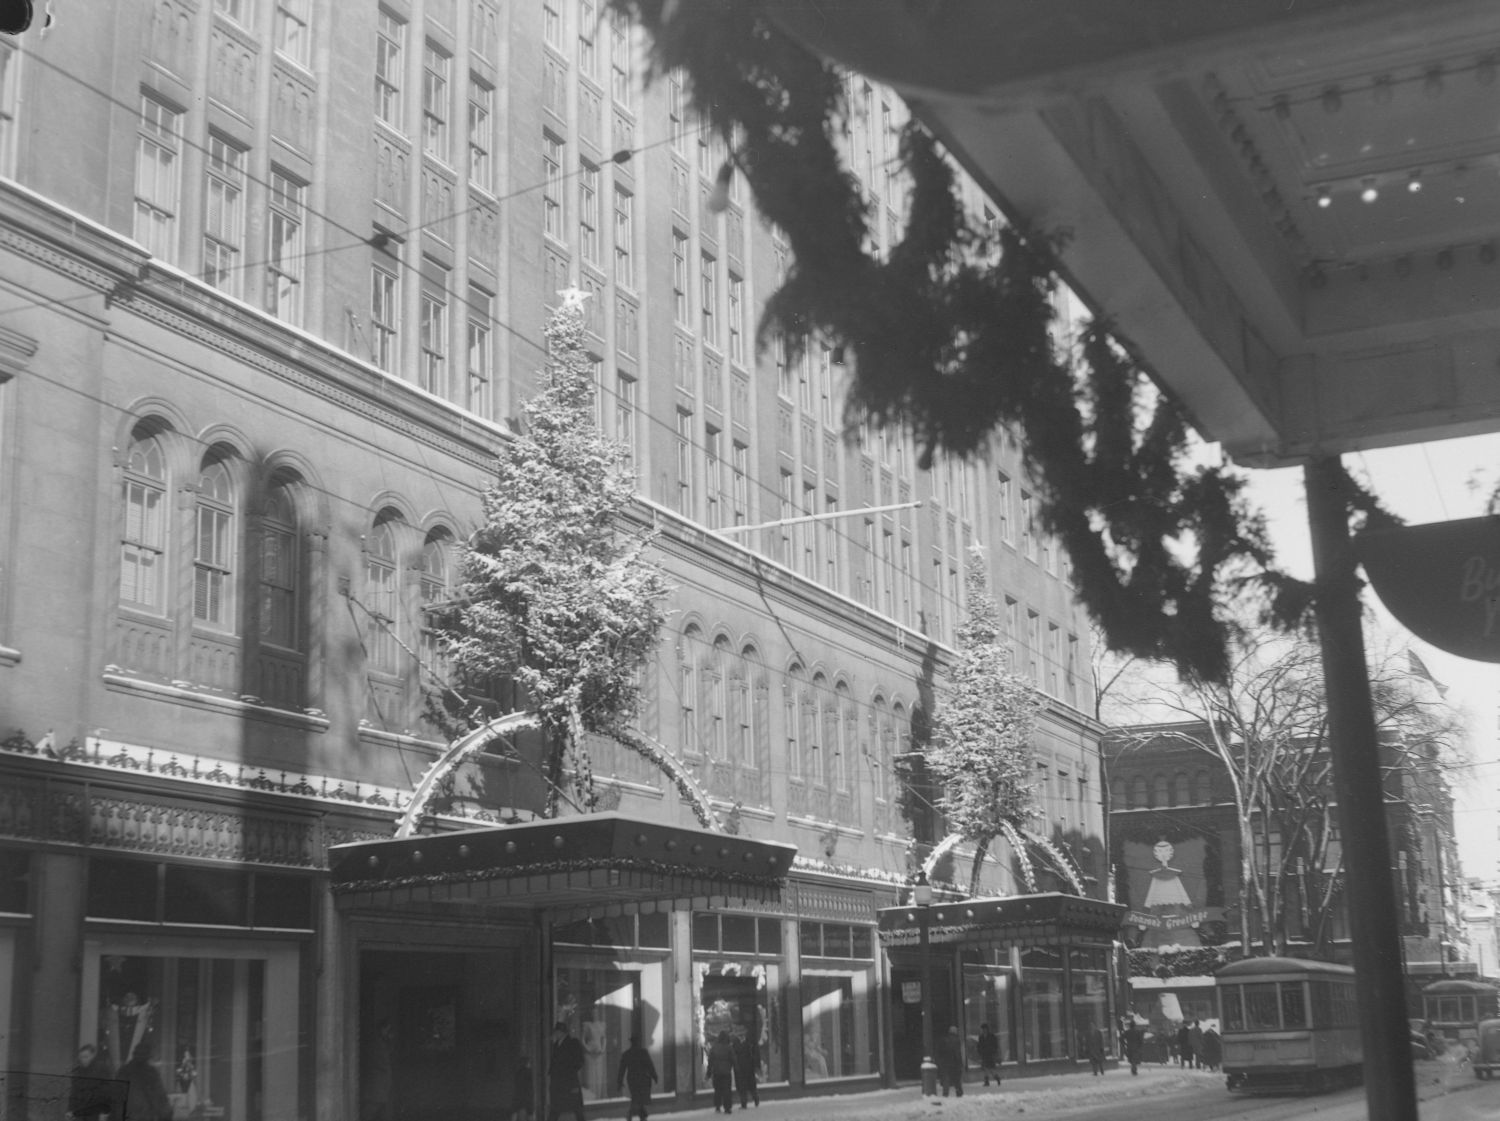 Sur la façade de la rue Sainte-Catherine, les marquises du magasin Eaton sont en 1946 décorées de grands sapins et d’arcs lumineux. Des passants circulent devant les vitrines, alors qu’un tramway passe.